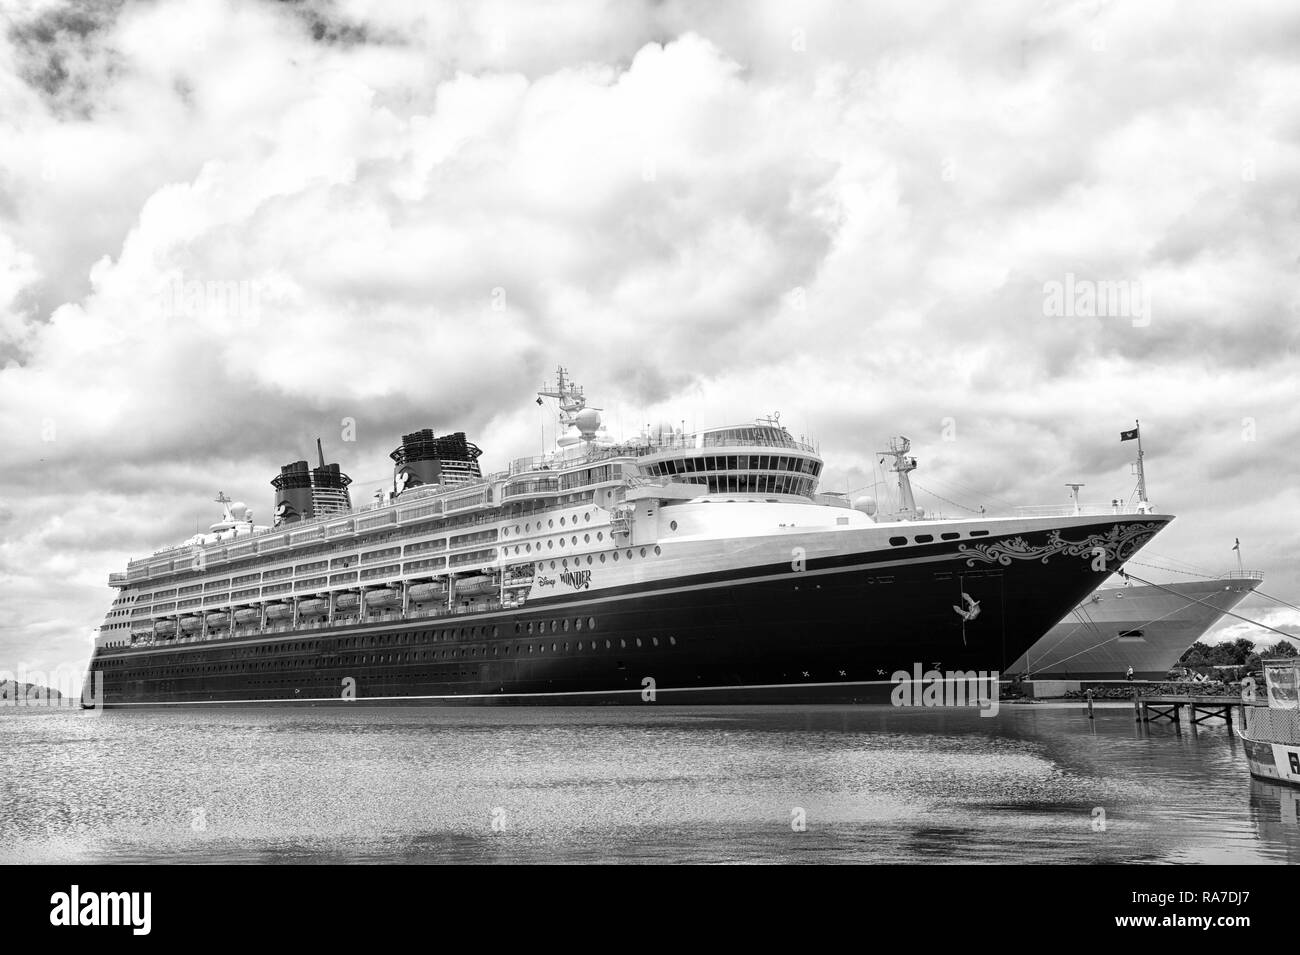 St Johns, Antigua - 15 Gennaio 2016: Disney Wonder nave da crociera ormeggiata al porto di mare sul cielo nuvoloso. Disney Cruise Line. Vacanze estive e la ricreazione su una nave da crociera. nave da crociera di trasporto. Foto Stock